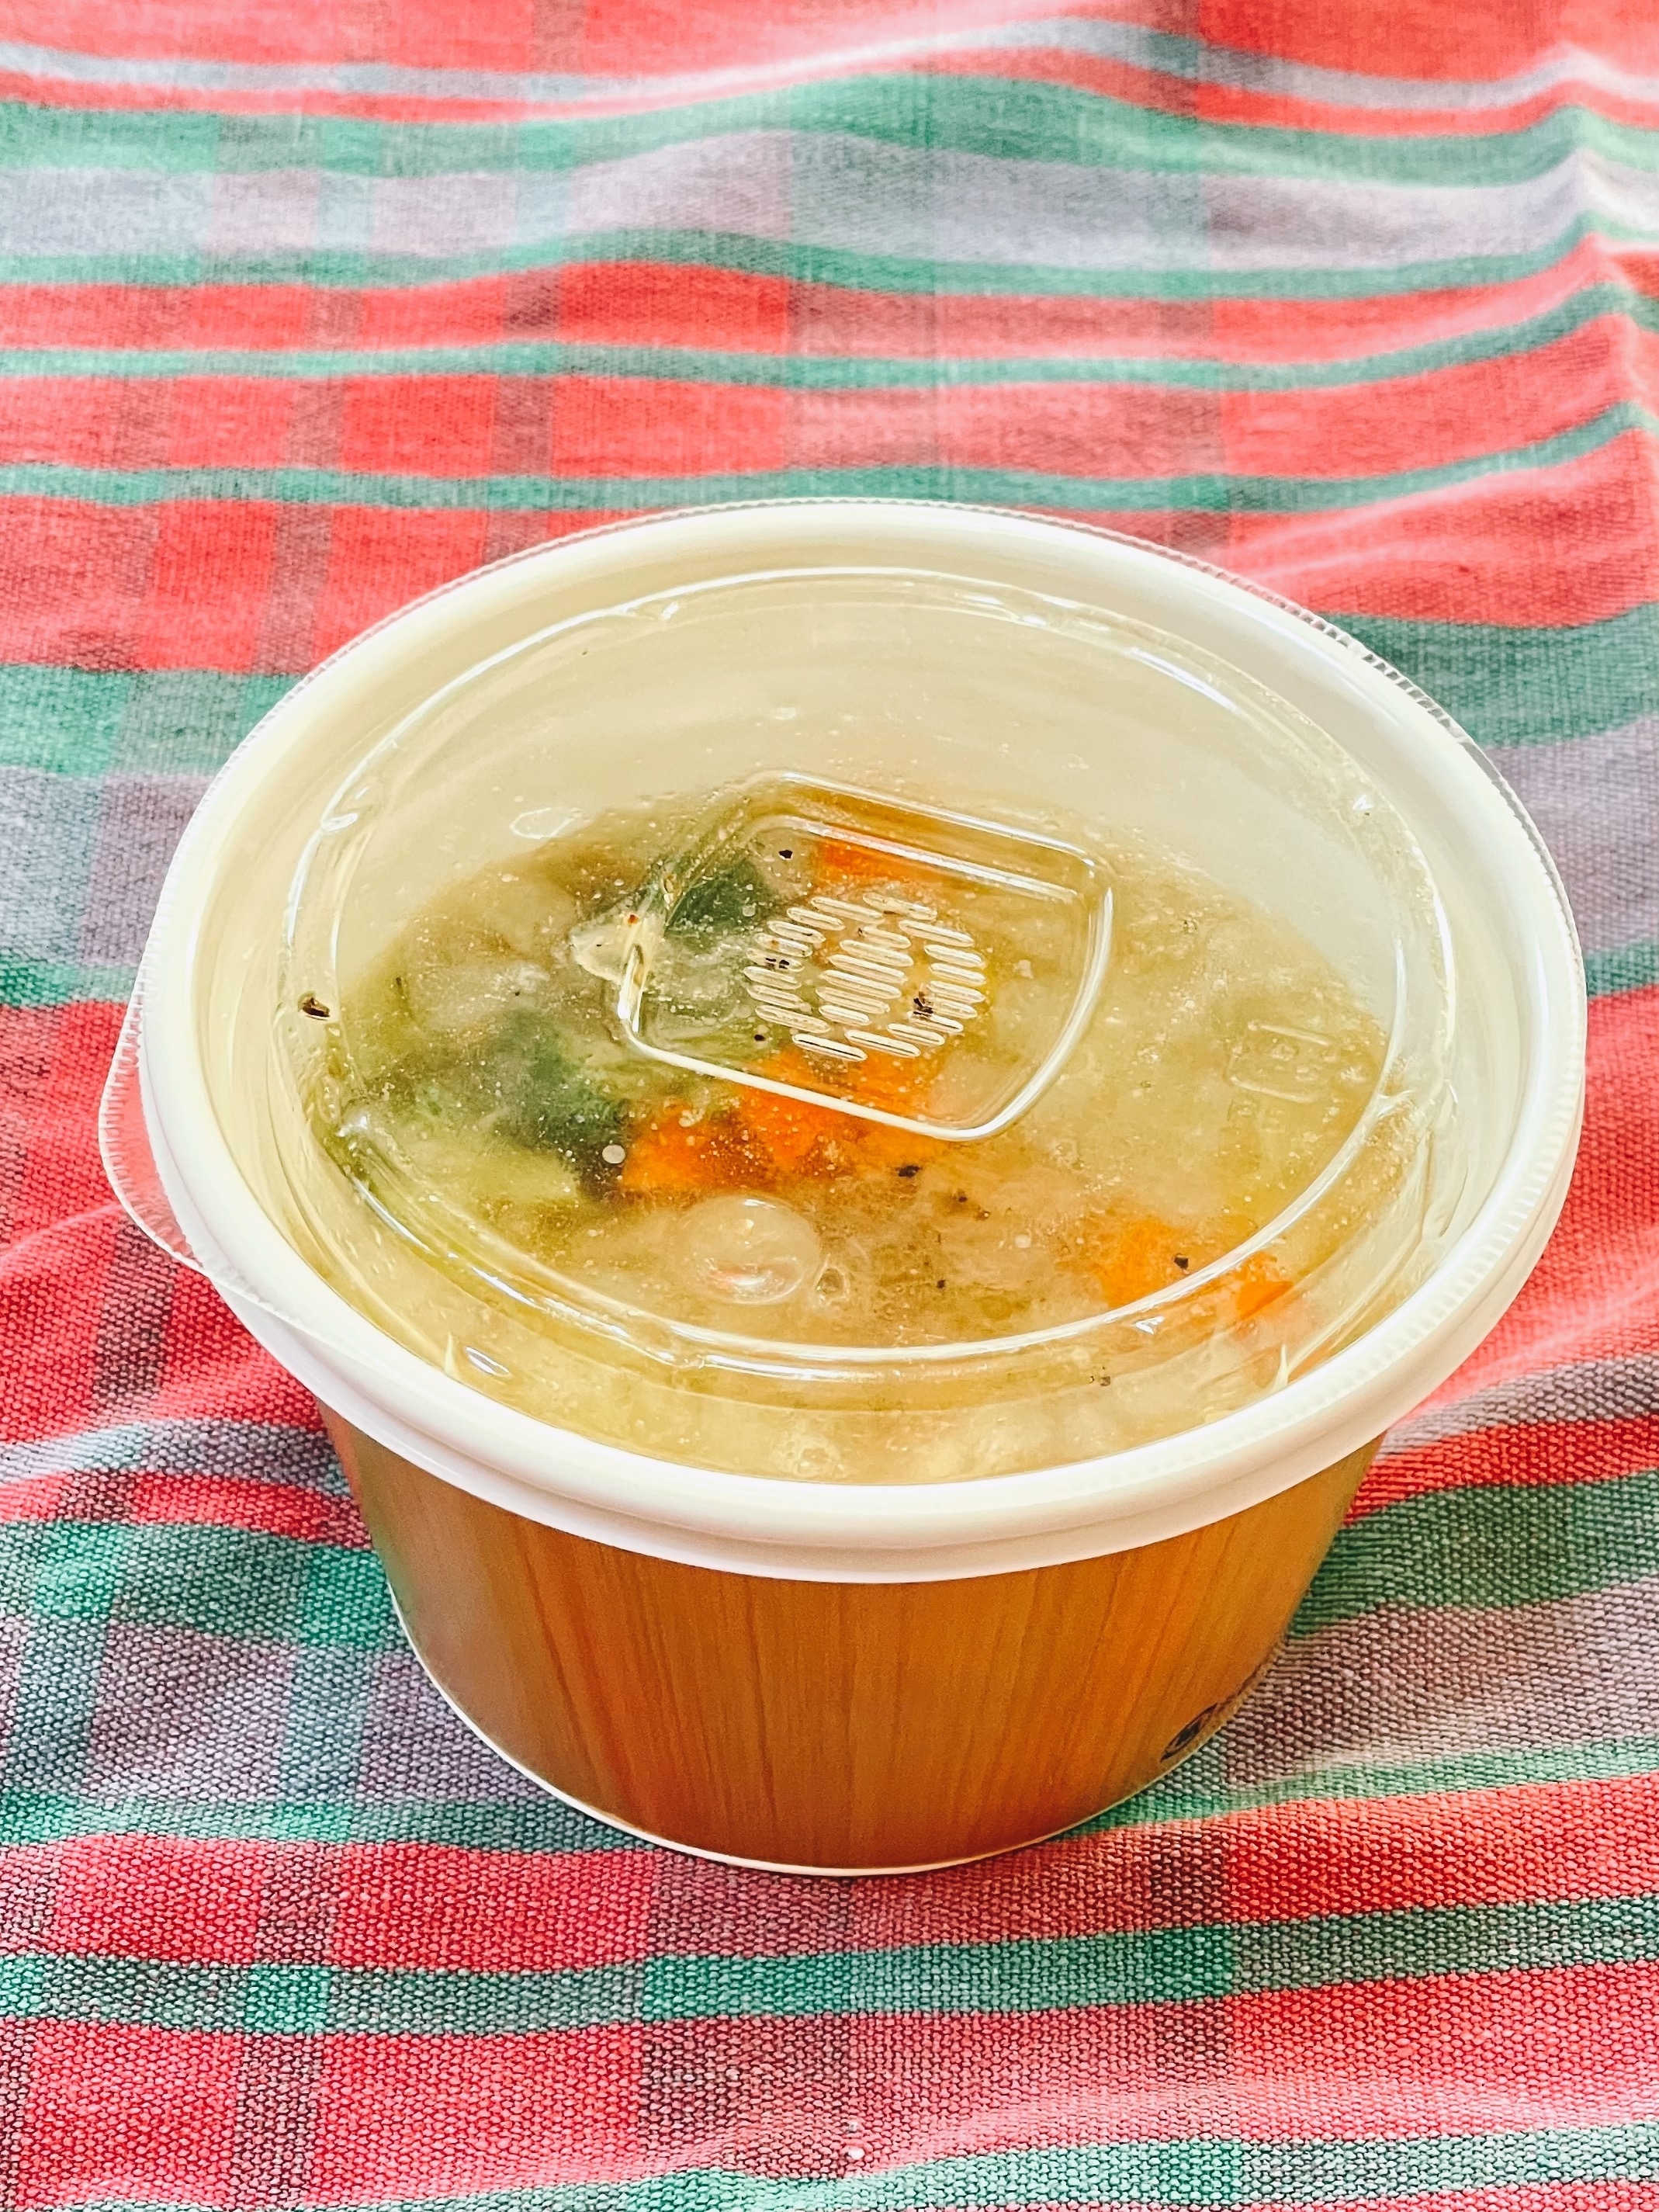 ファミマのオススメスープ「1/3日分野菜使用コンソメスープ」